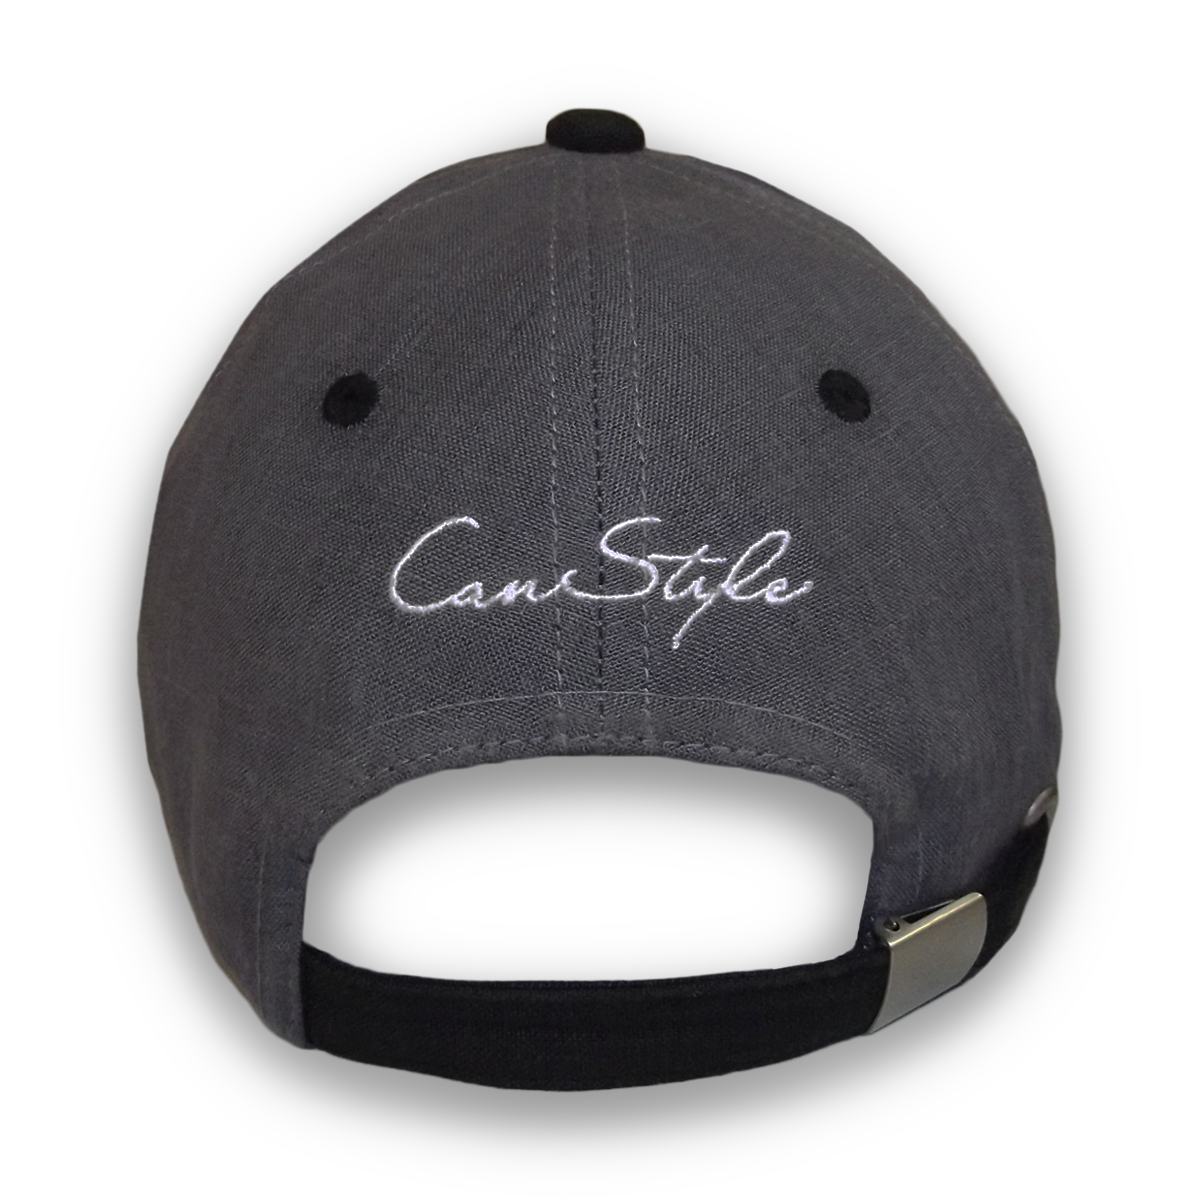 Image de la casquette #CanStyle en chanvre de CanEmpire. Grâce à son tissu composé à 100% de chanvre, la casquette noire & grise offre des propriétés thermorégulatrices & de protection UV.